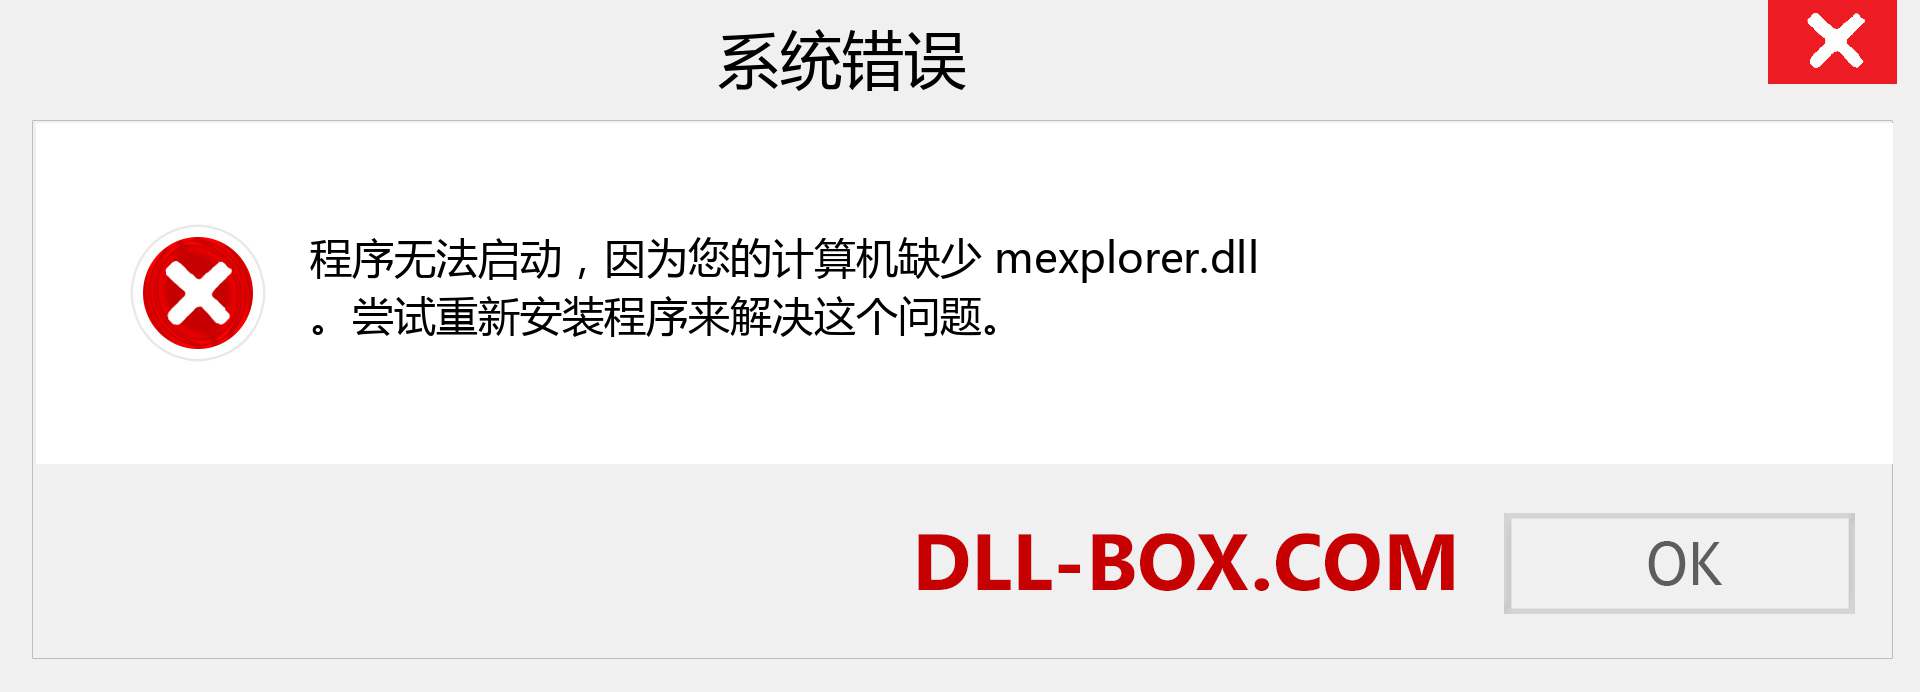 mexplorer.dll 文件丢失？。 适用于 Windows 7、8、10 的下载 - 修复 Windows、照片、图像上的 mexplorer dll 丢失错误